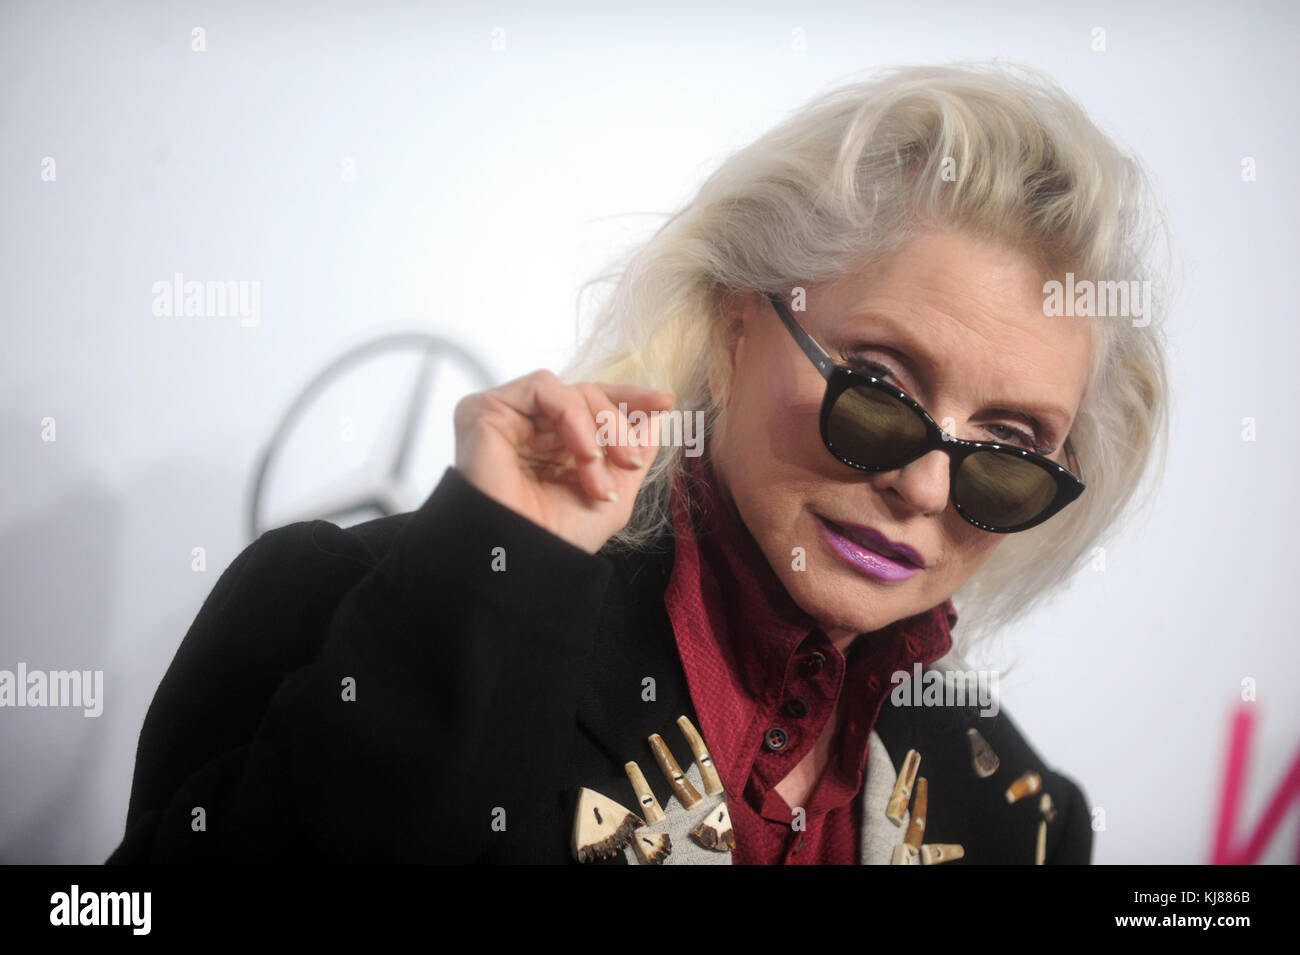 NEW YORK, NY - DECEMBER 09: Debbie Harry attends Billboard Women In ...